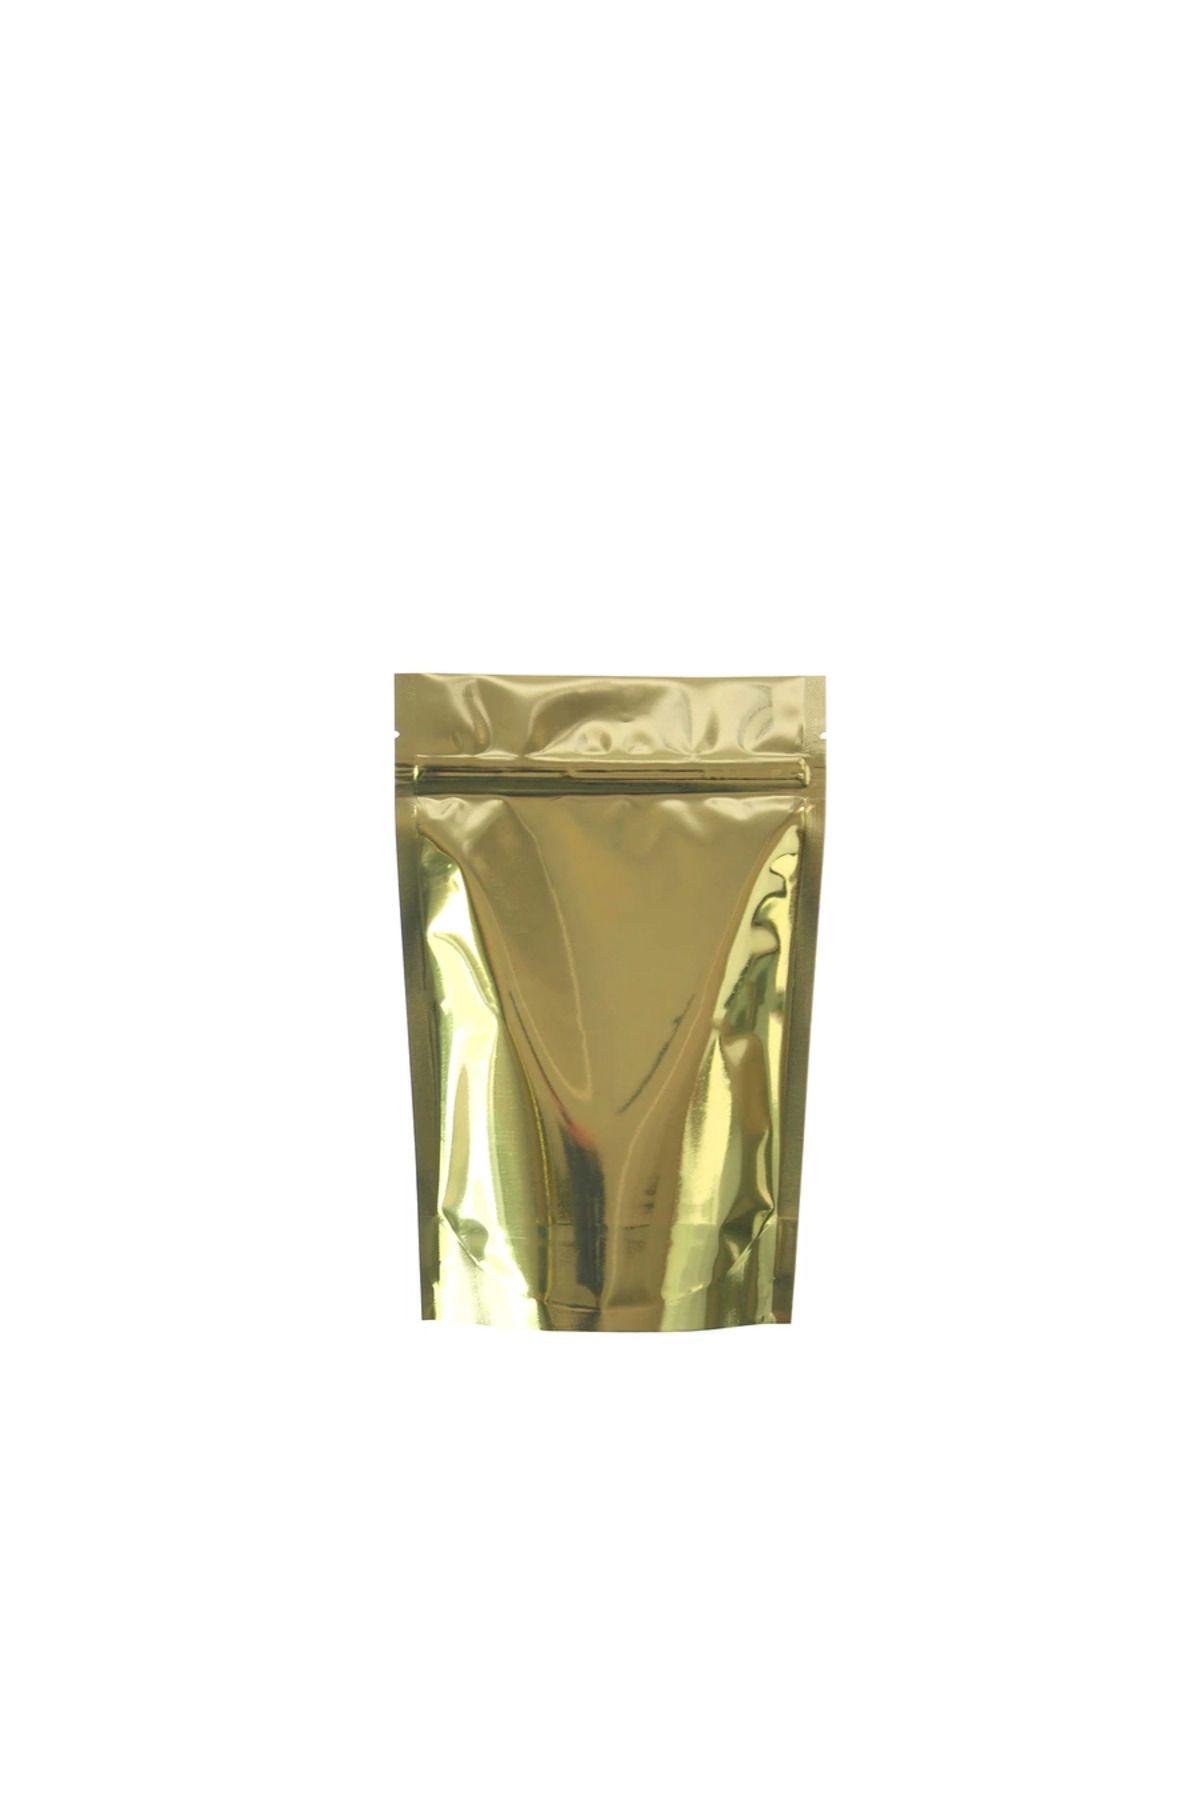 ofisturka Gold Alüminyum Doypack 13x22,5 cm - 100 Adet